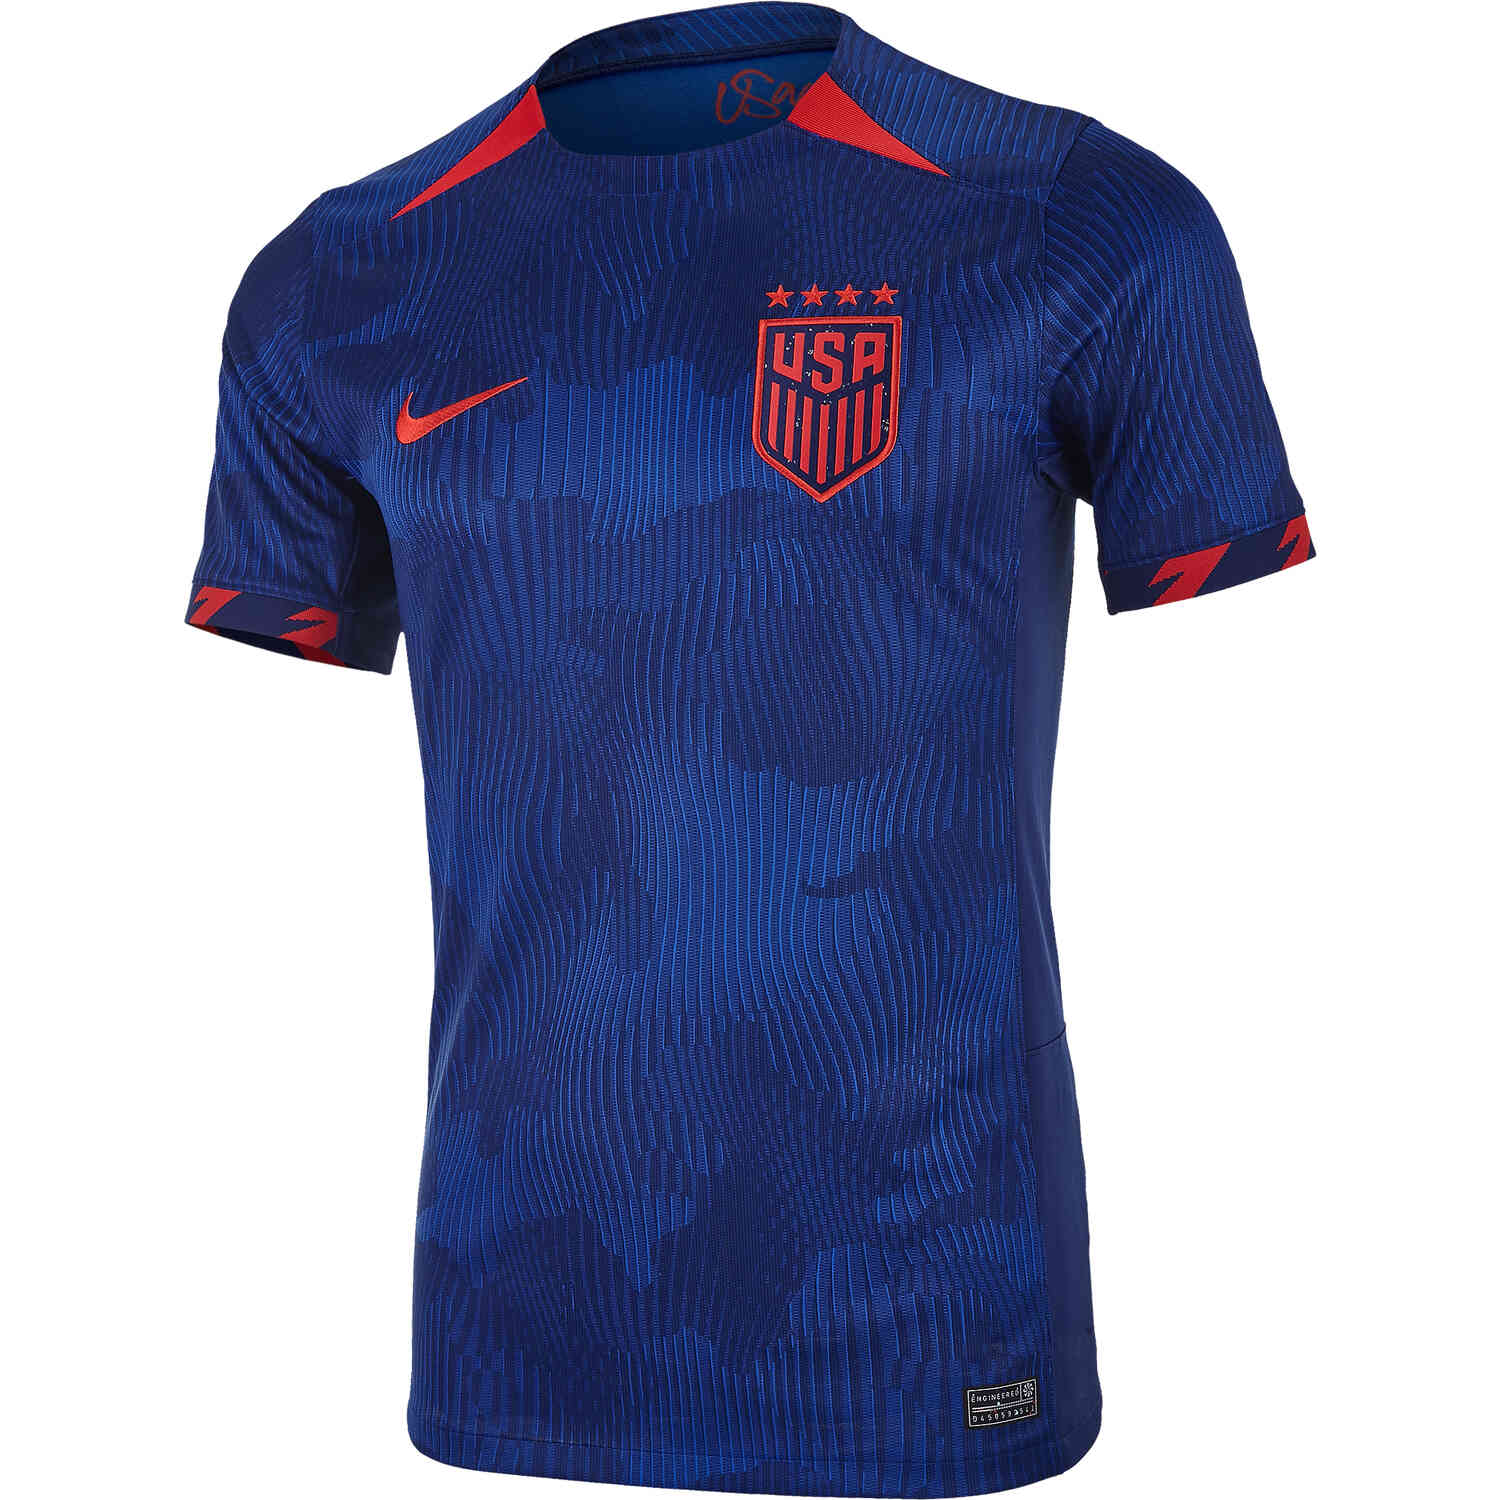 USA Women Football Jersey T-Shirt – Tstars